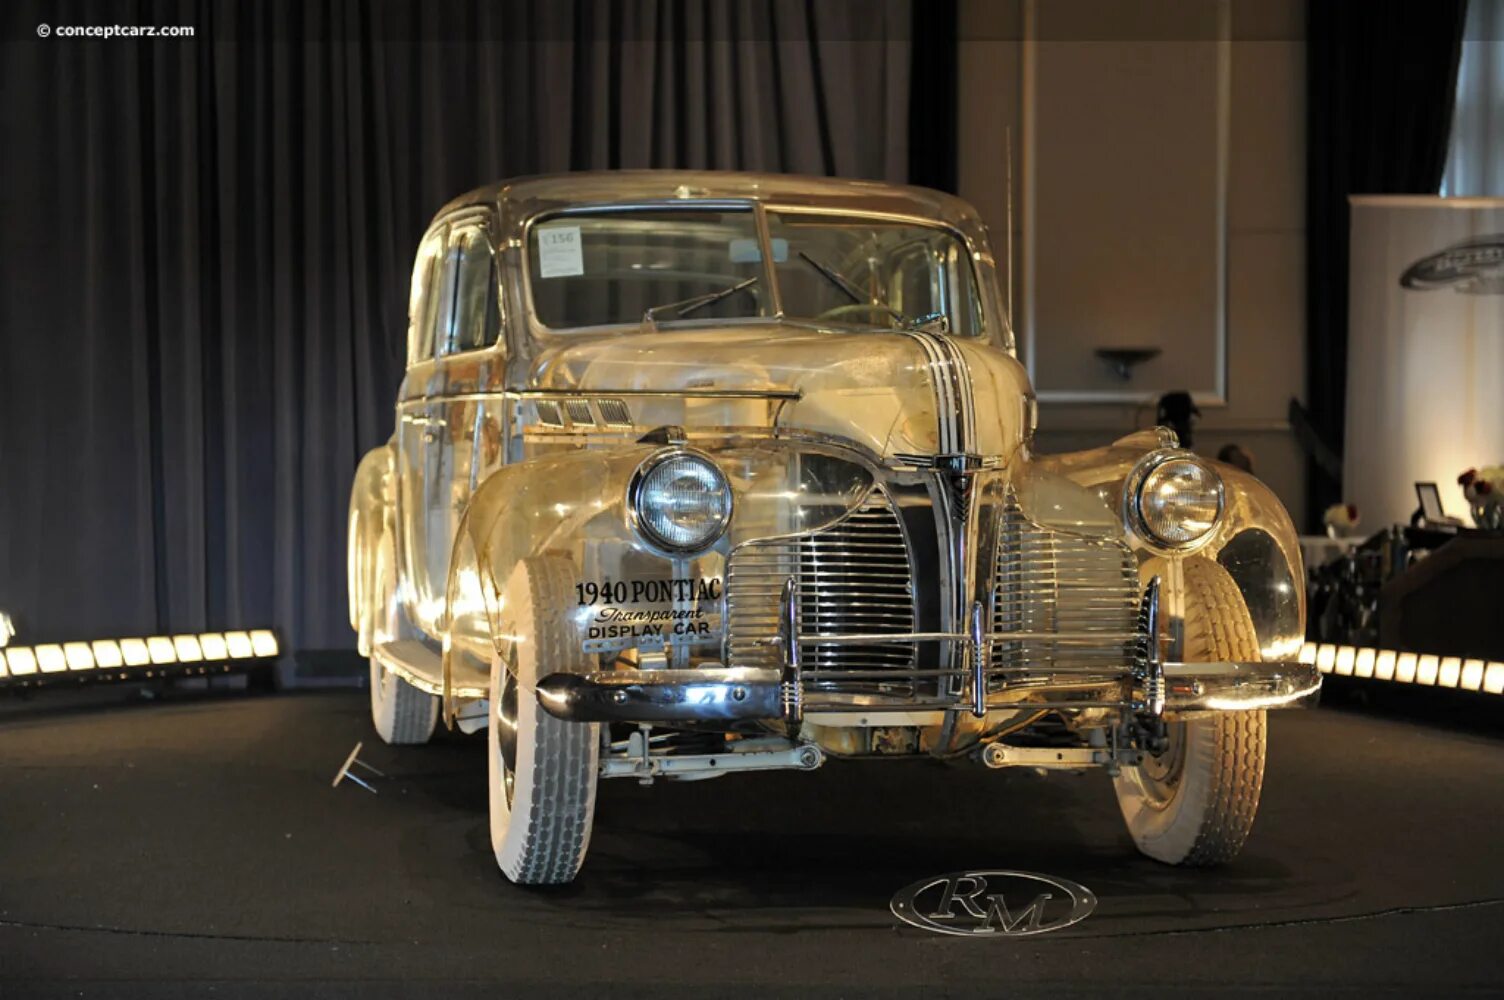 1939 Понтиак Делюкс. Pontiac Deluxe 1940. Pontiac Deluxe Six 1940 Ghost. Pontiac Deluxe Six.